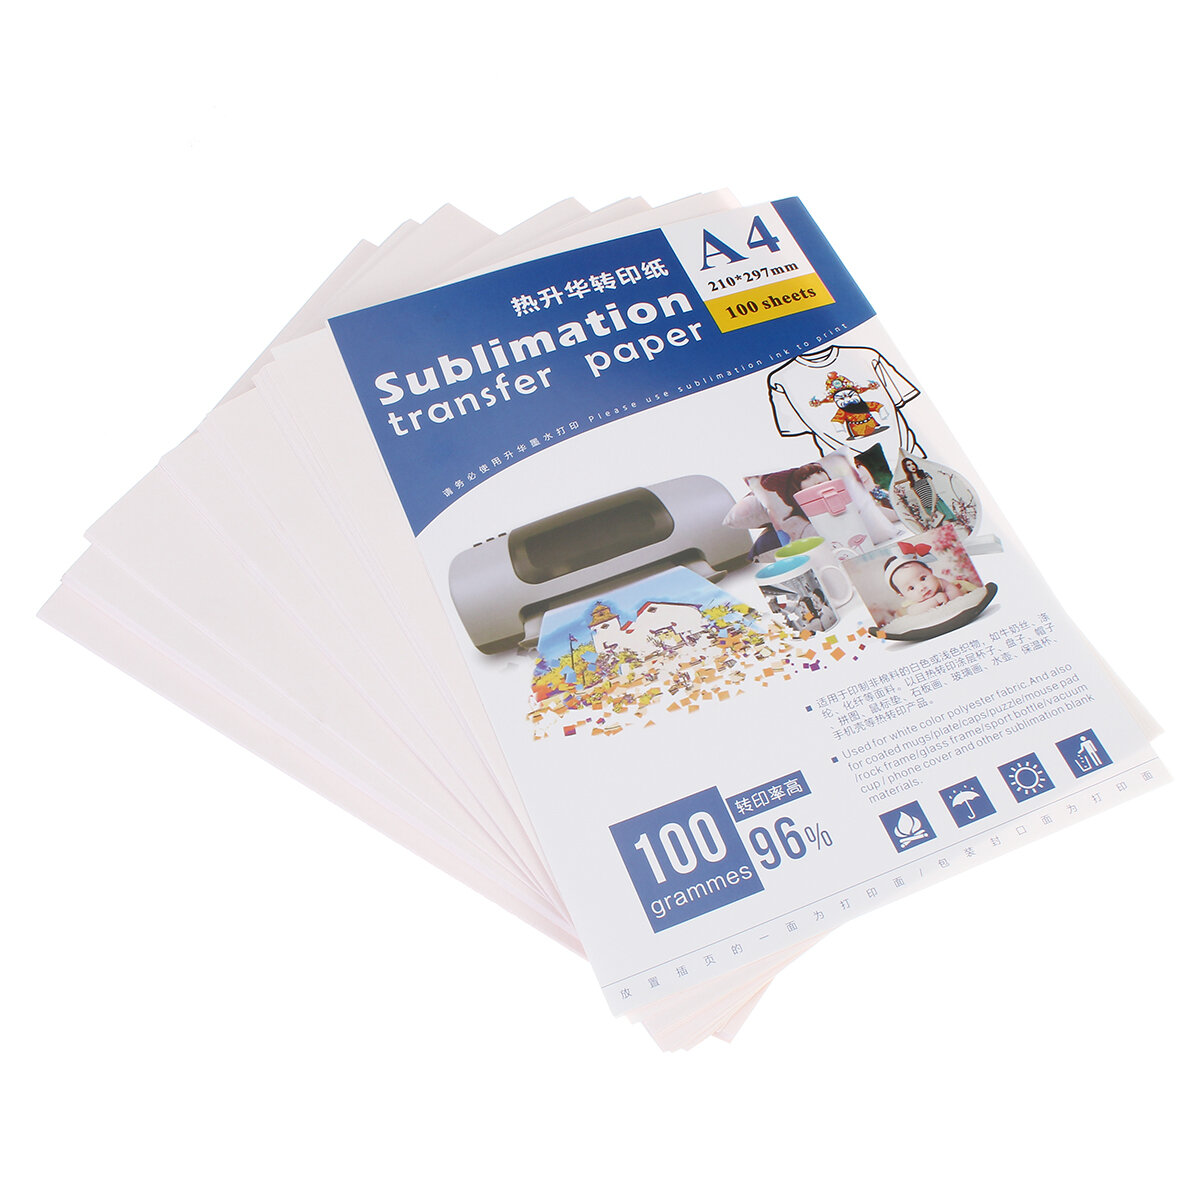 

100Pcs T-shirt Printing Ironing Hot Stamping Machine Lamp/Dark Transfer Paper